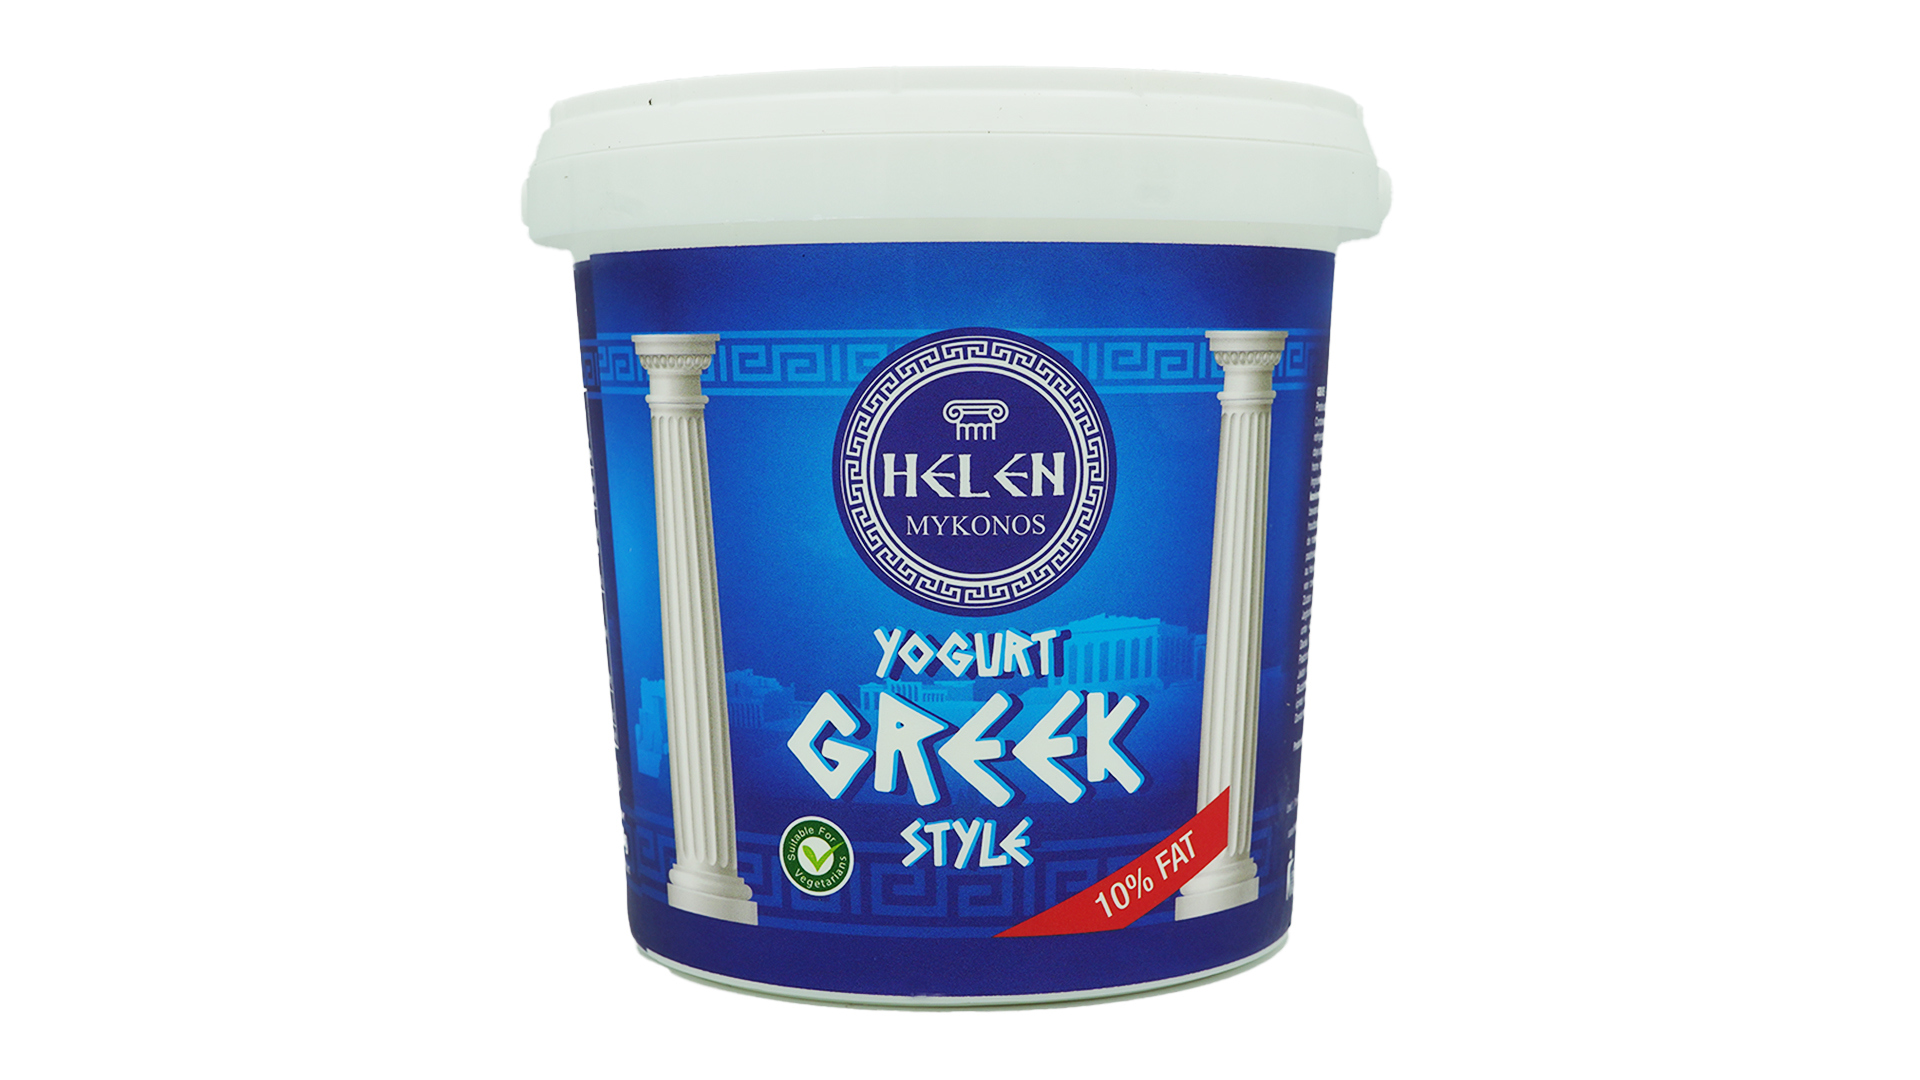 Helen mykonos yogurt greek style 1kg 2